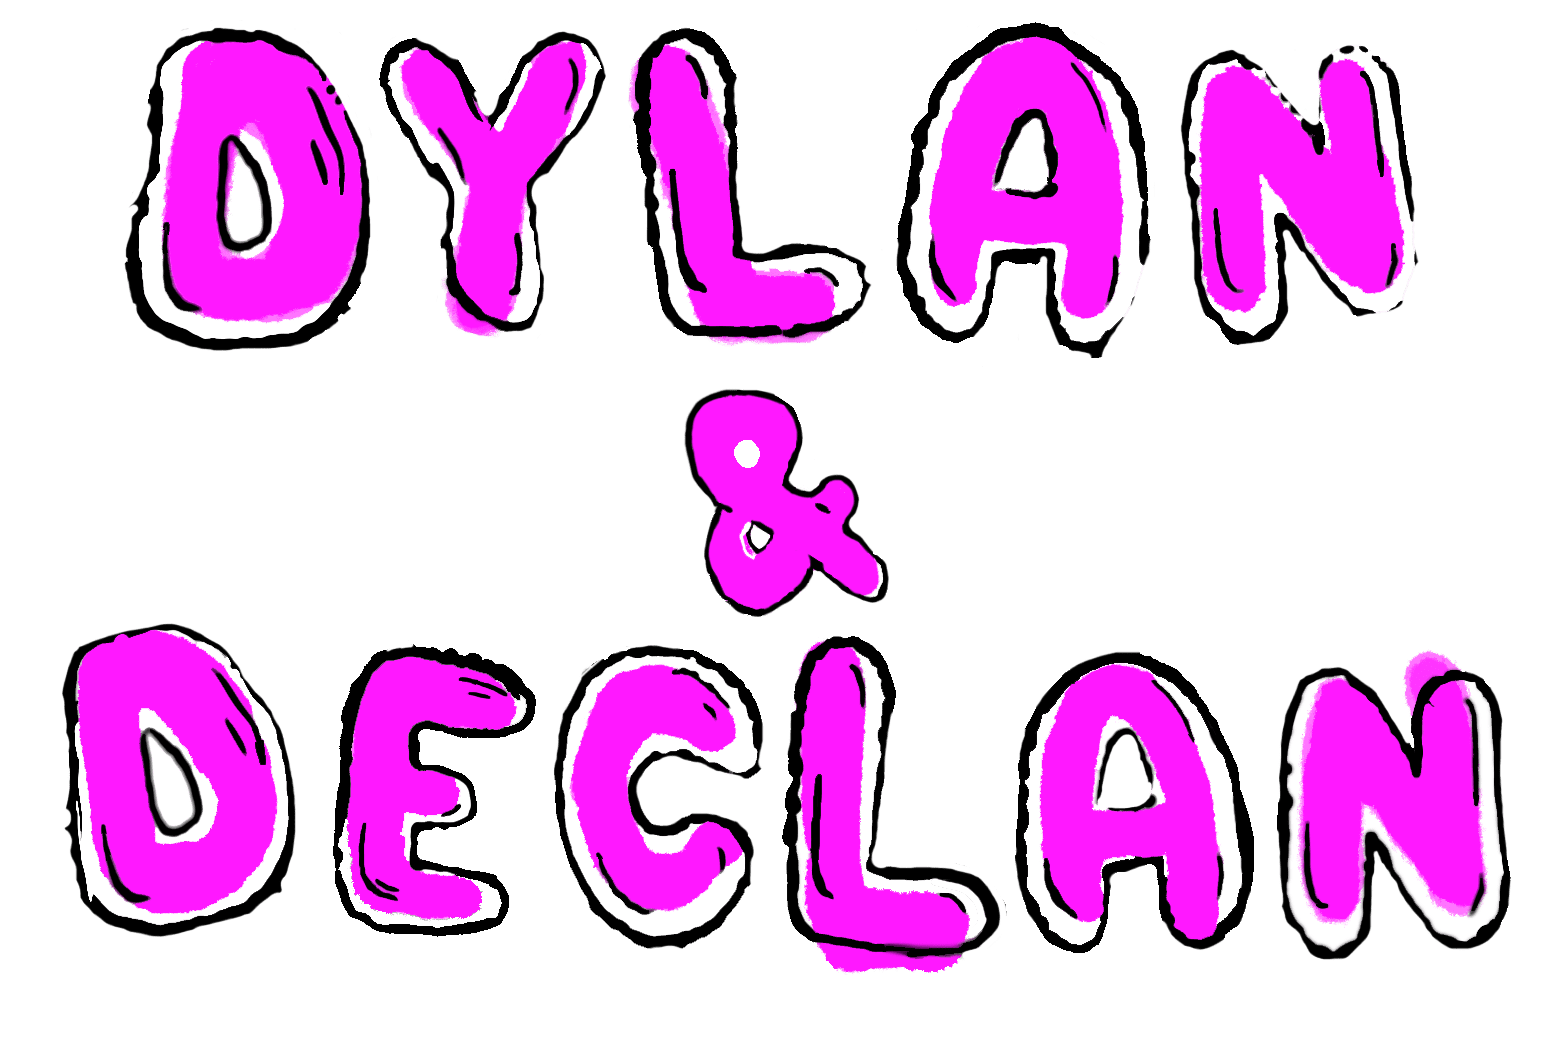 Dylan & Declan